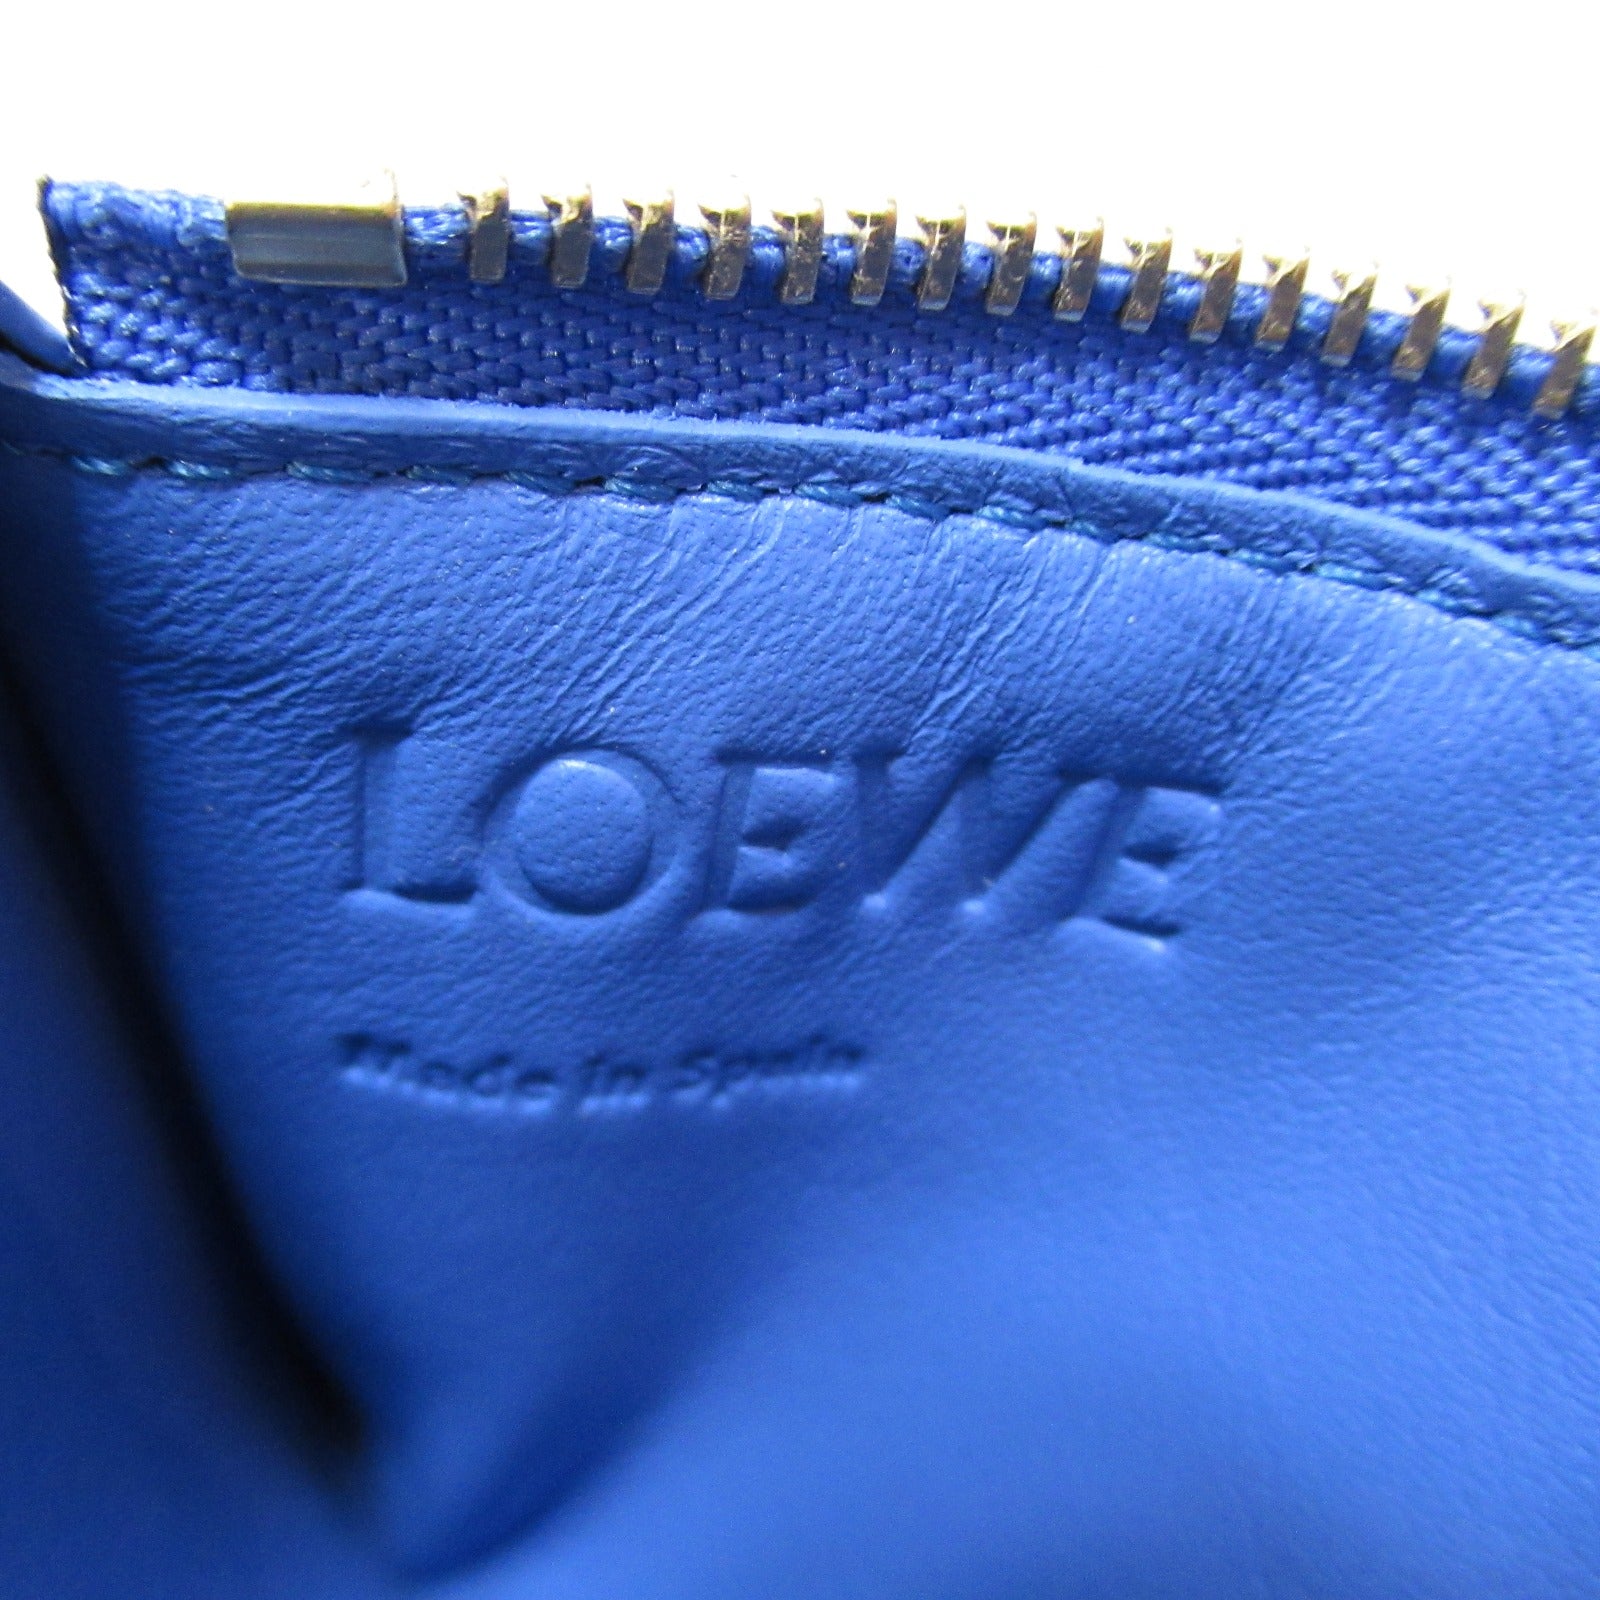 Loewe LOEWE Card Case Accessories    Blue CLE0Z40X015695